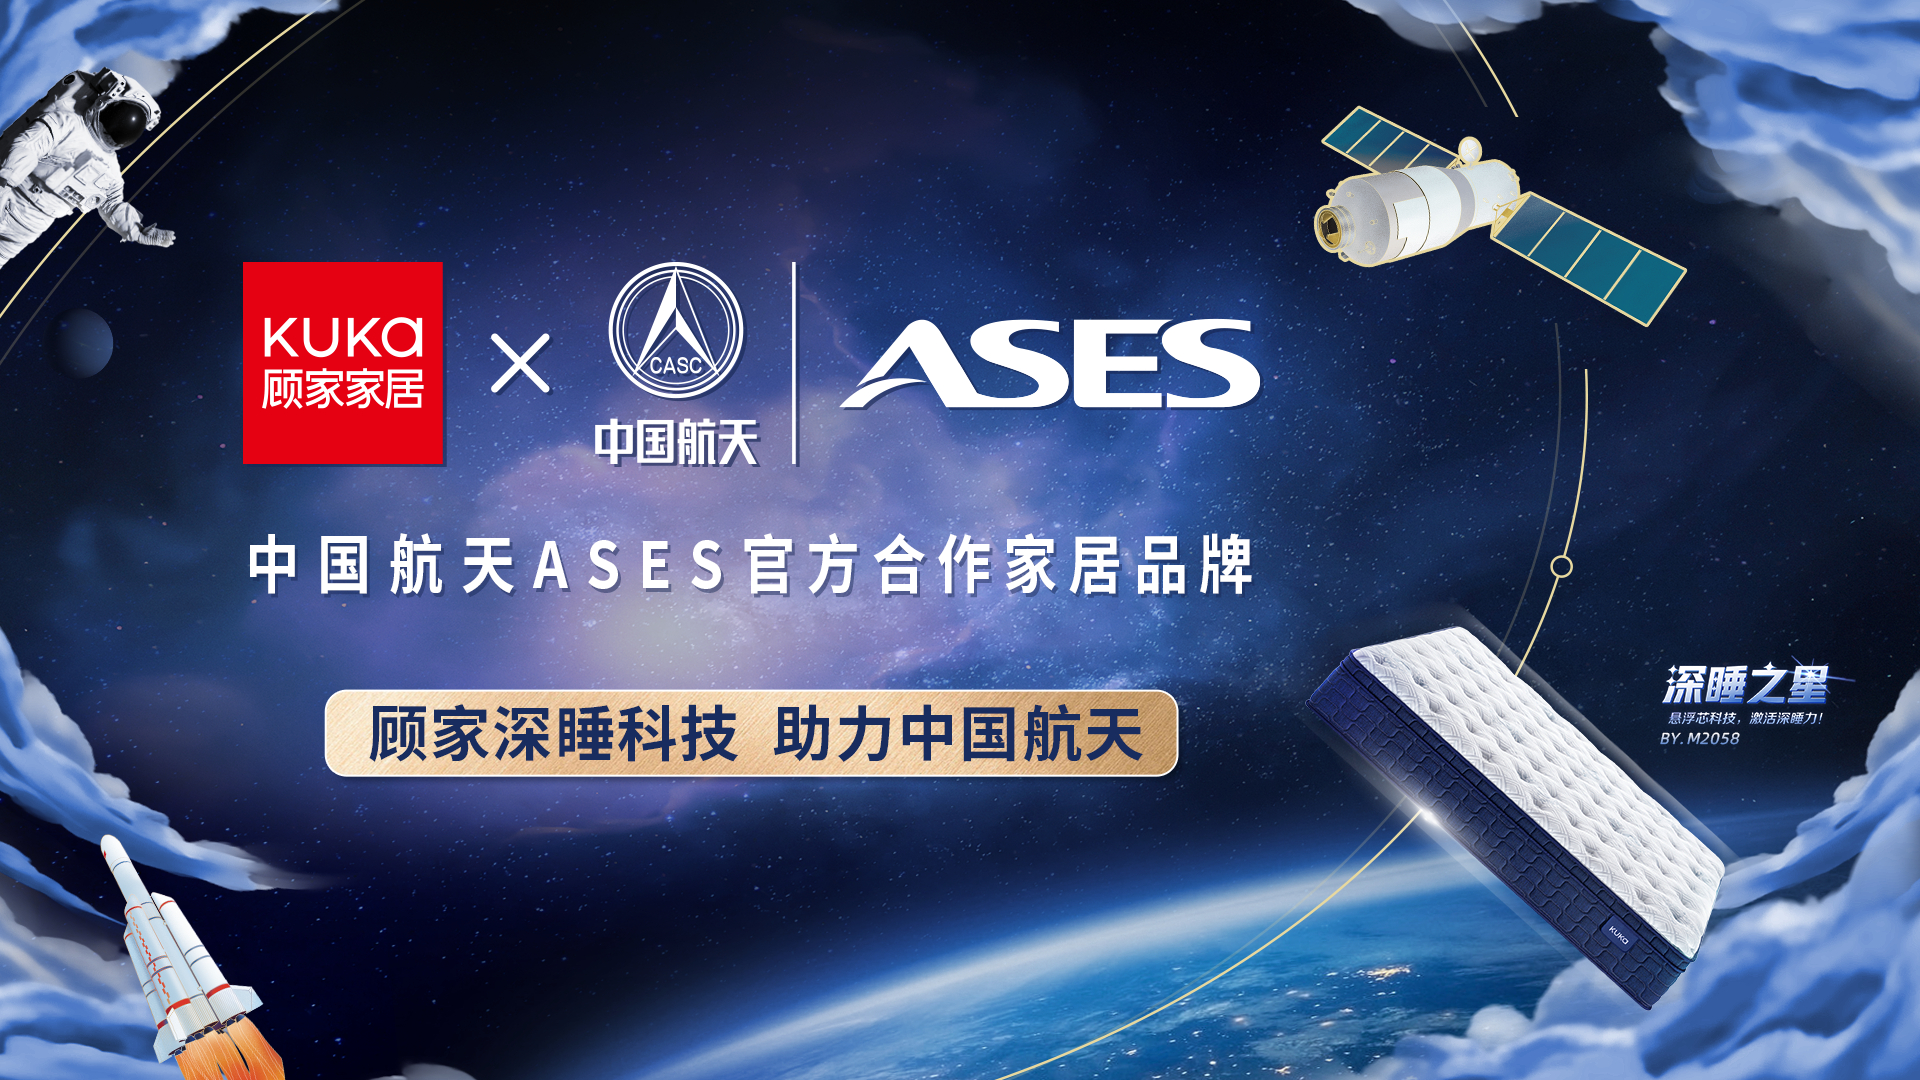 顾家家居成为中国航天 ASES 官方合作家居品牌